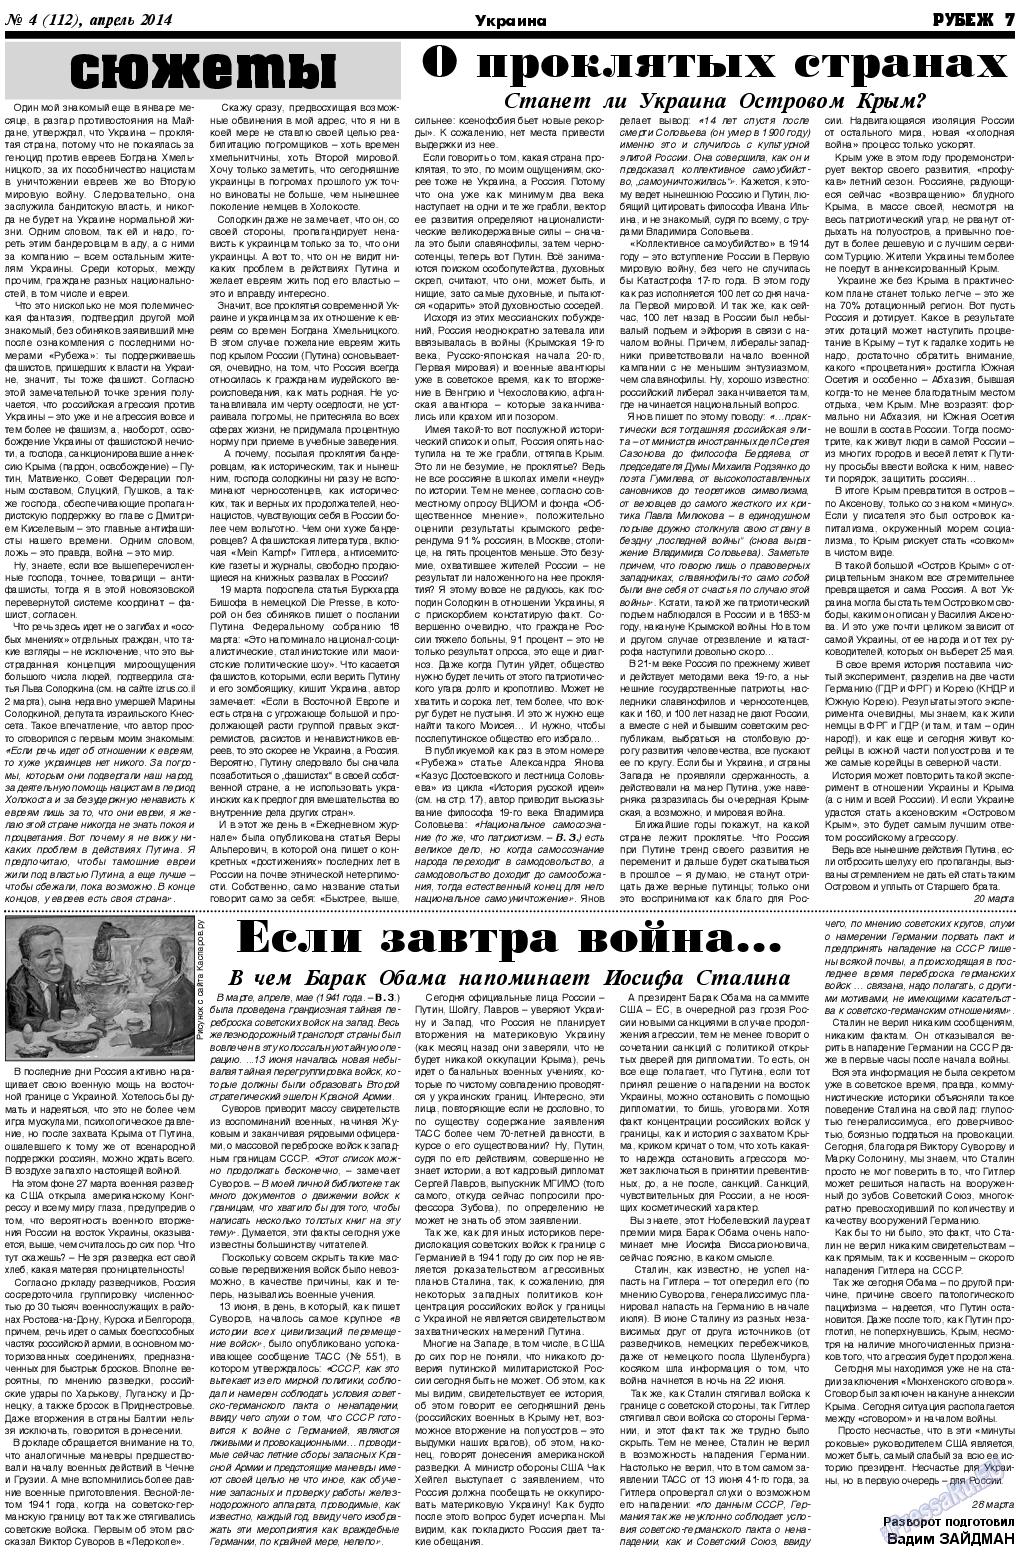 Рубеж (газета). 2014 год, номер 4, стр. 7